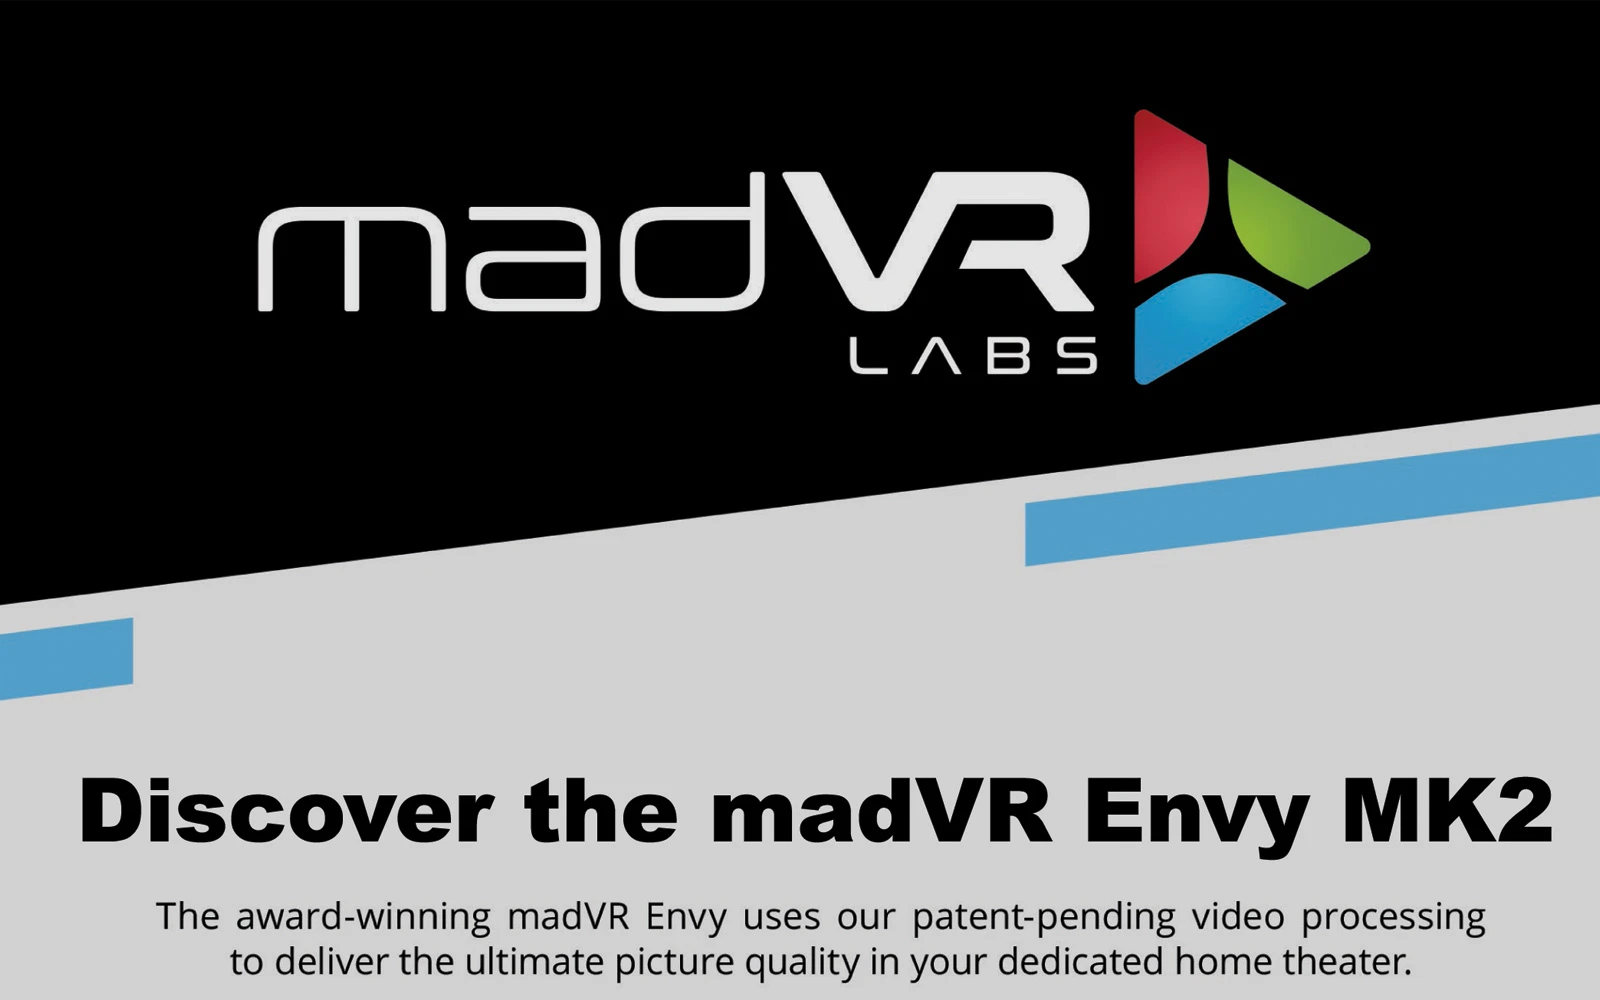 CSN Teknik installerer madVR Envy Extreame mk2. verdens bedste videoprocessor